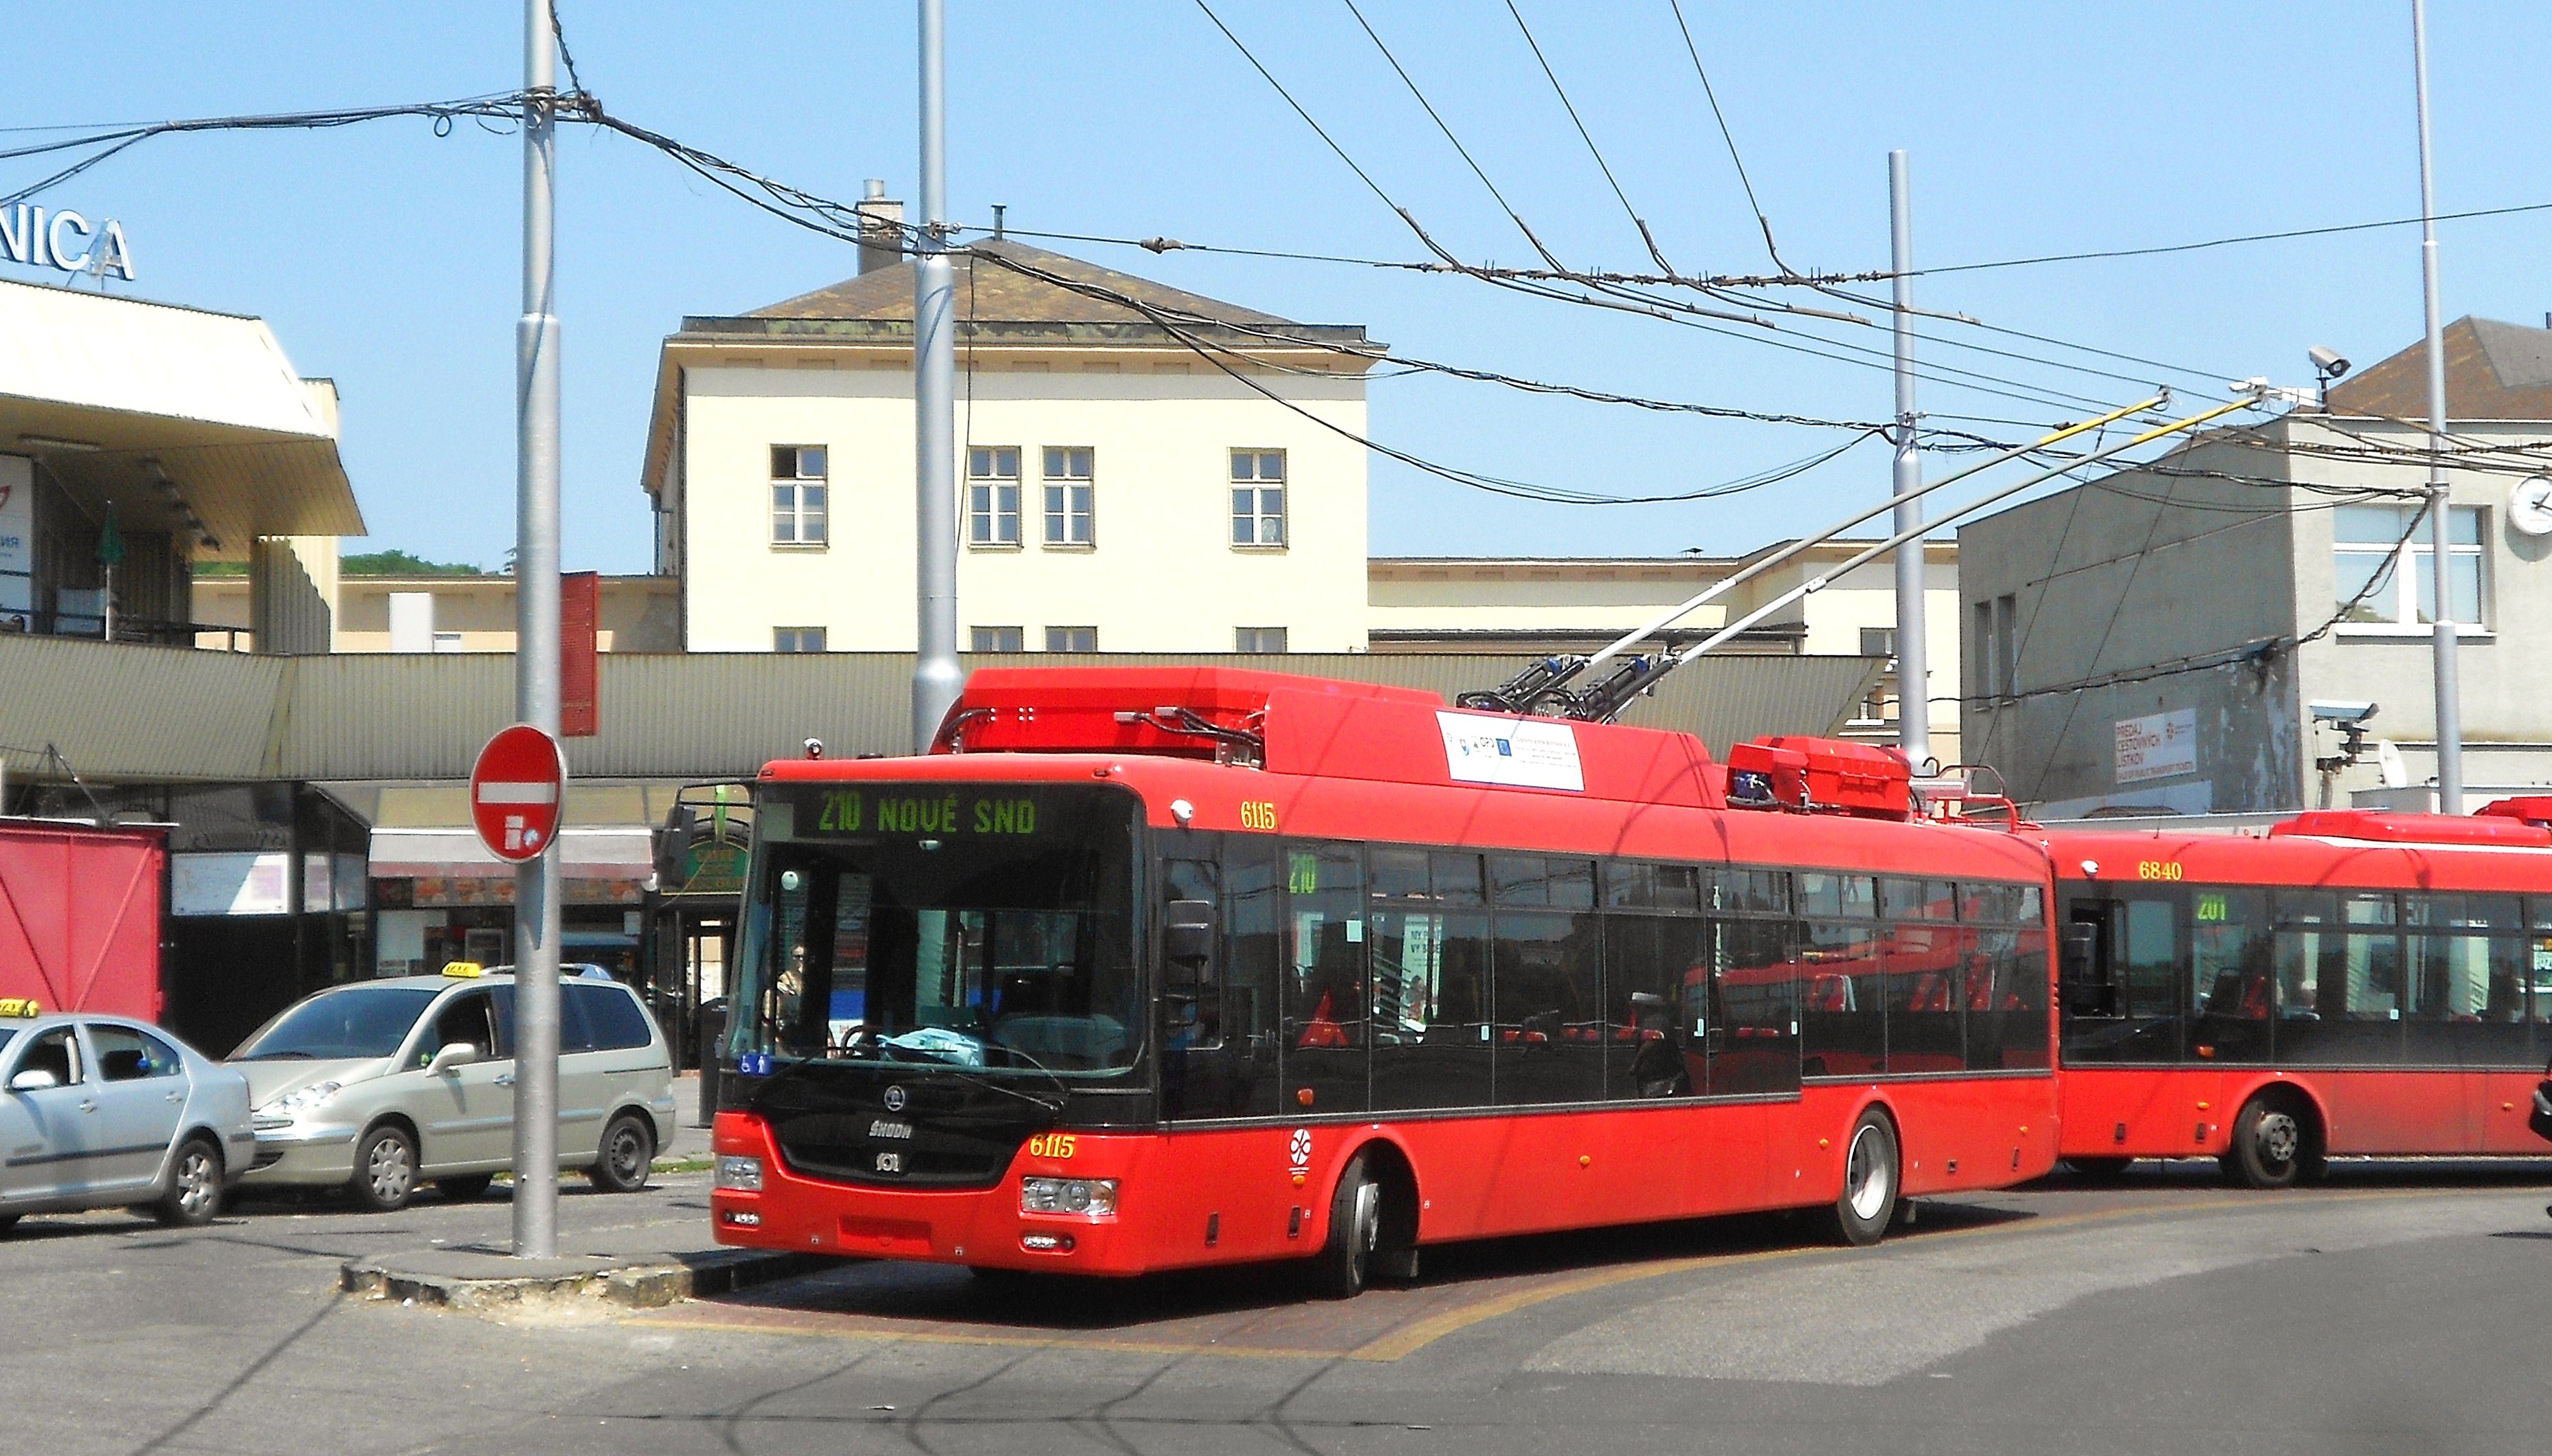 6115 odpočívá na lince 210 před Hl.stanicou.Trolejbus je v provozu teprve 2.den